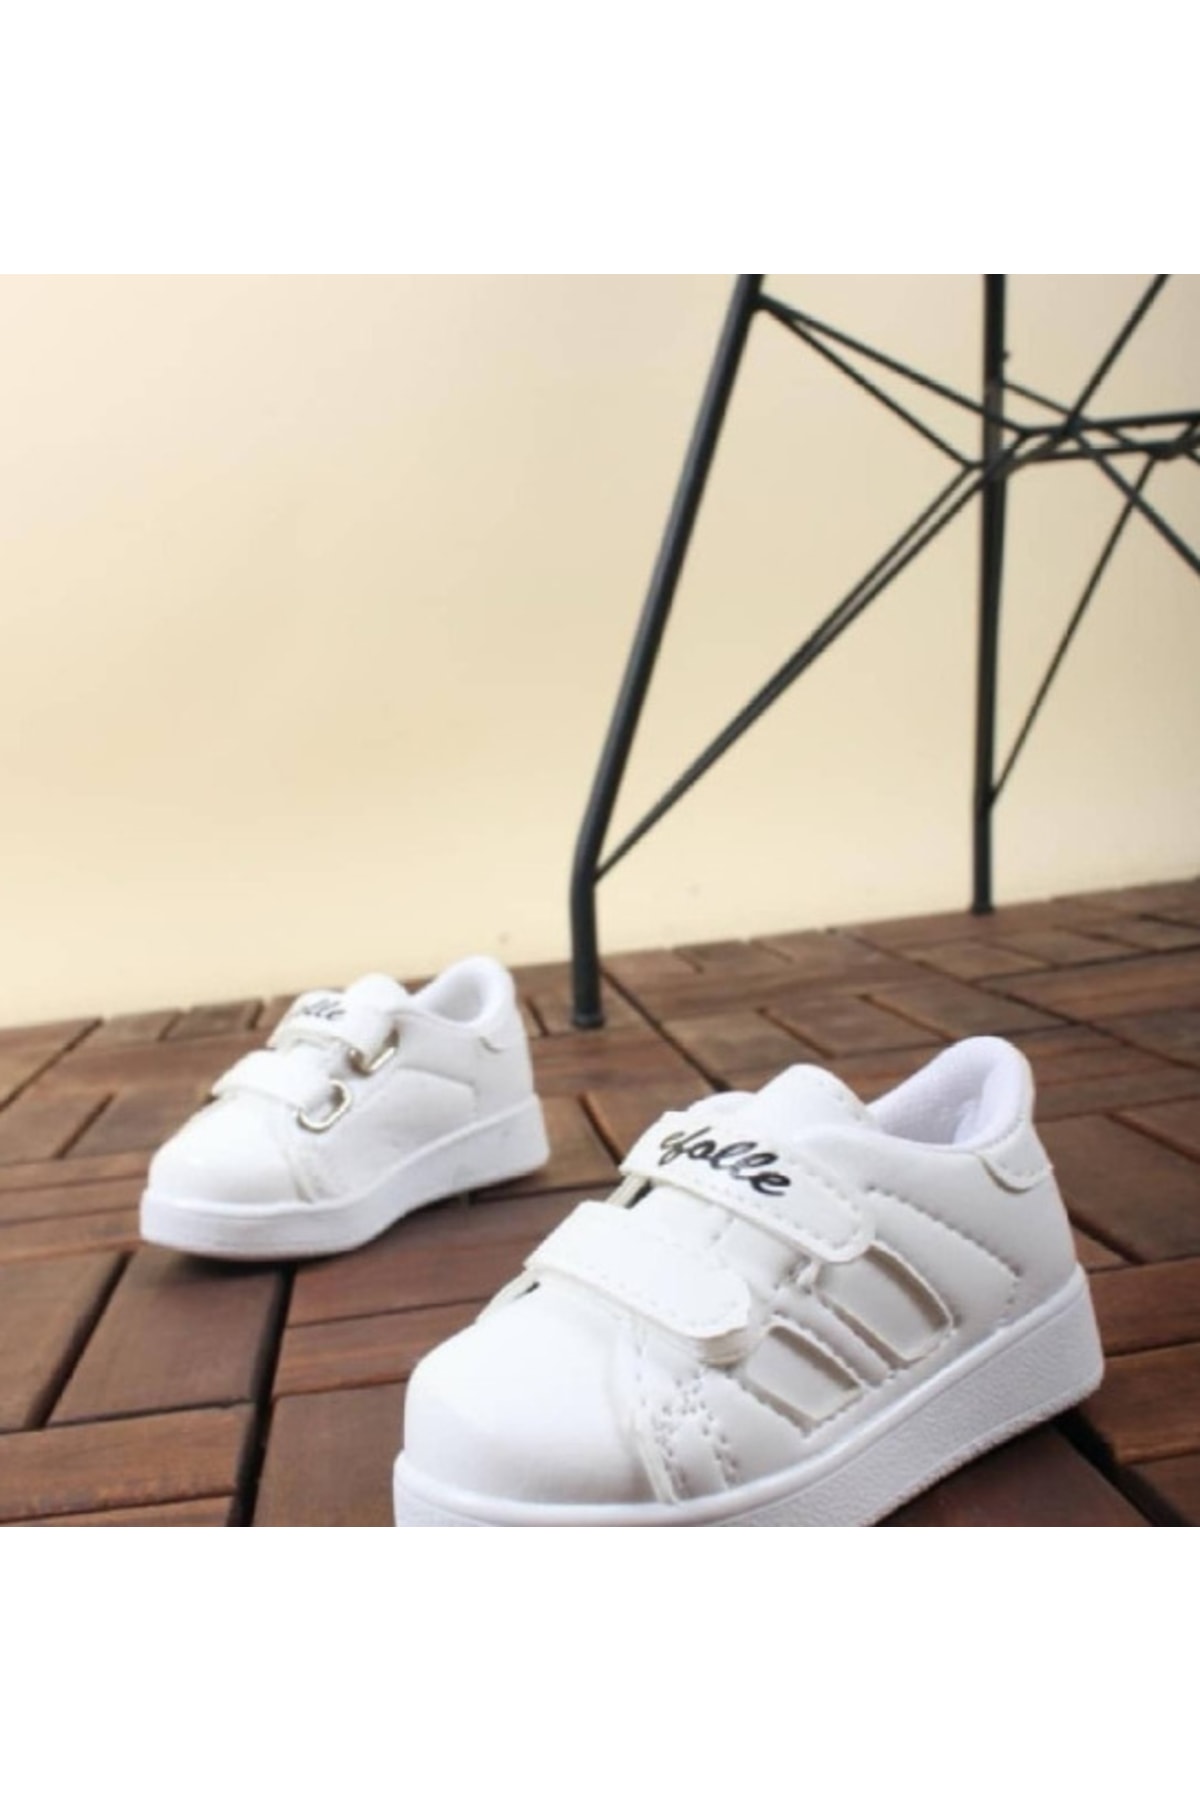 DARKLOW Efl-2b Bebek Spor Sneaker Günlük Cırtlı Spor Ayakkabı Beyaz